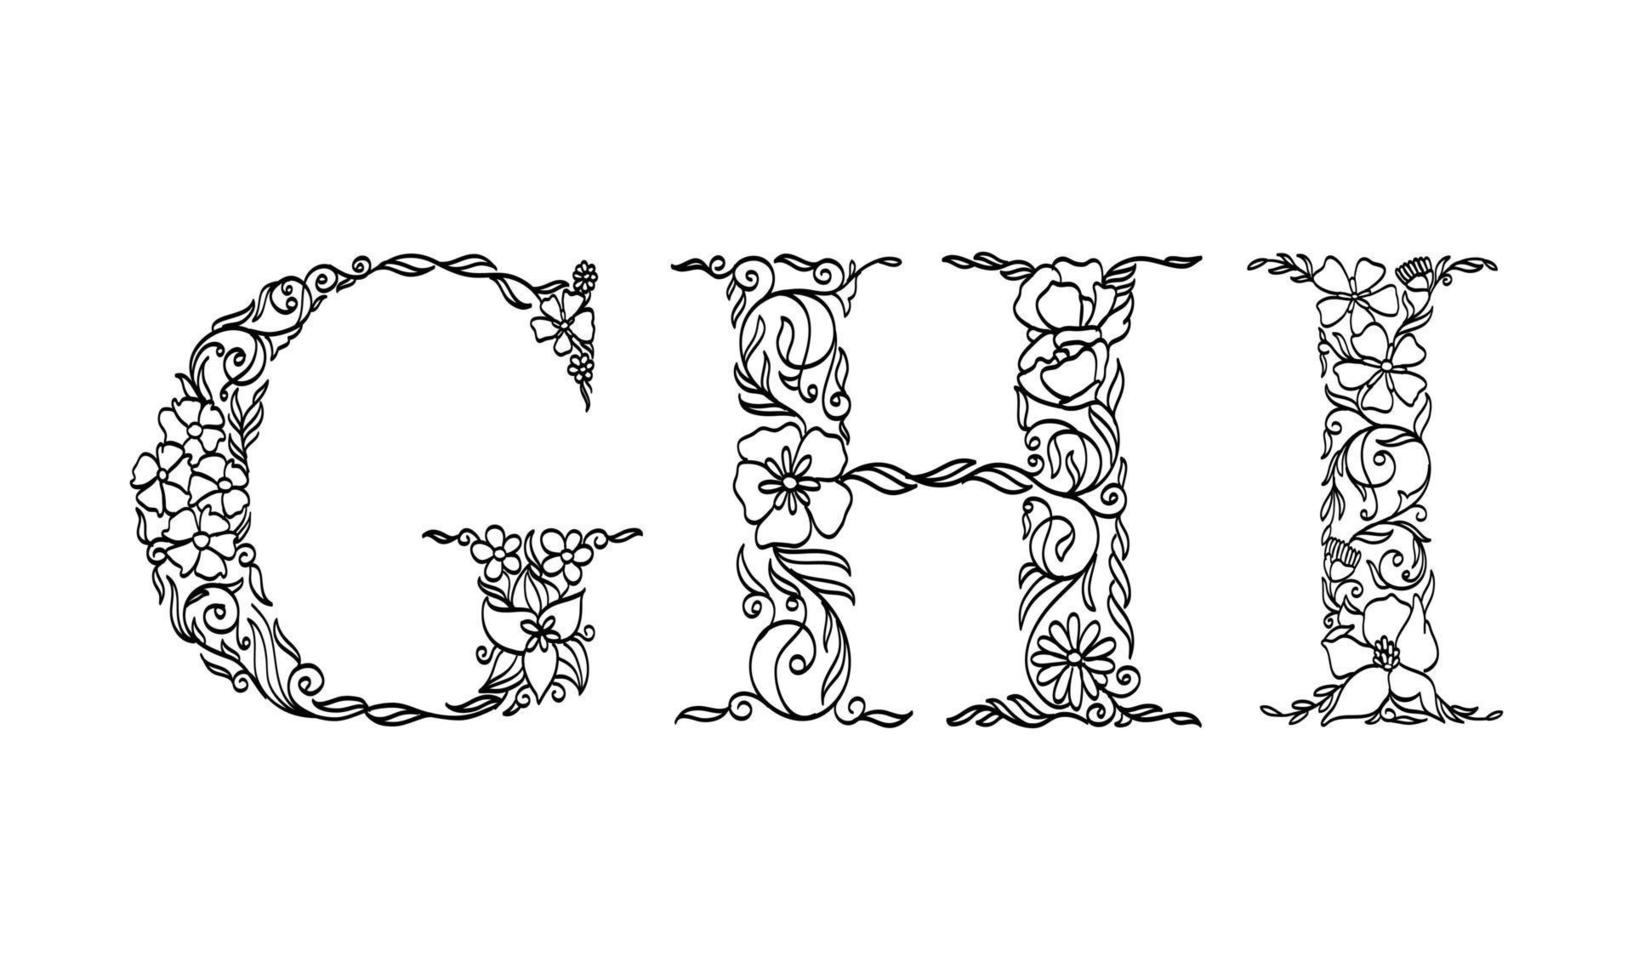 Blumenillustrationsalphabet g, h, i, Vektorgrafik-Schriftart von Blumen- und Blattpflanzen kreative handgezeichnete Strichzeichnungen für abstrakte und natürliche Naturstil-Looks in einzigartiger monochromer Designdekoration vektor